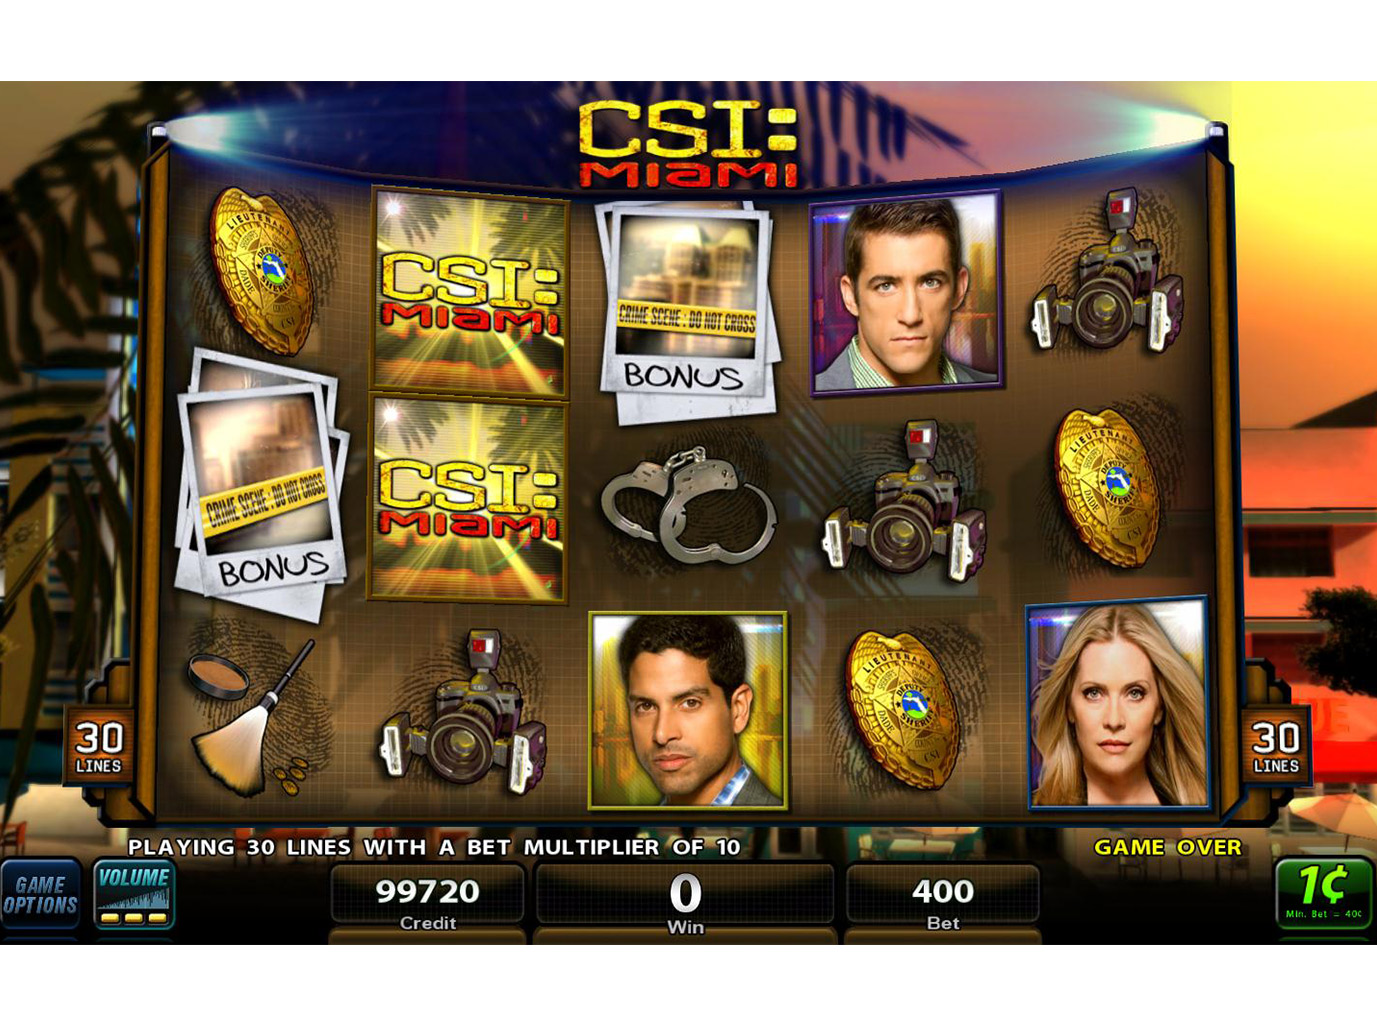 CasinoClub Introduces CSI Instant Slots